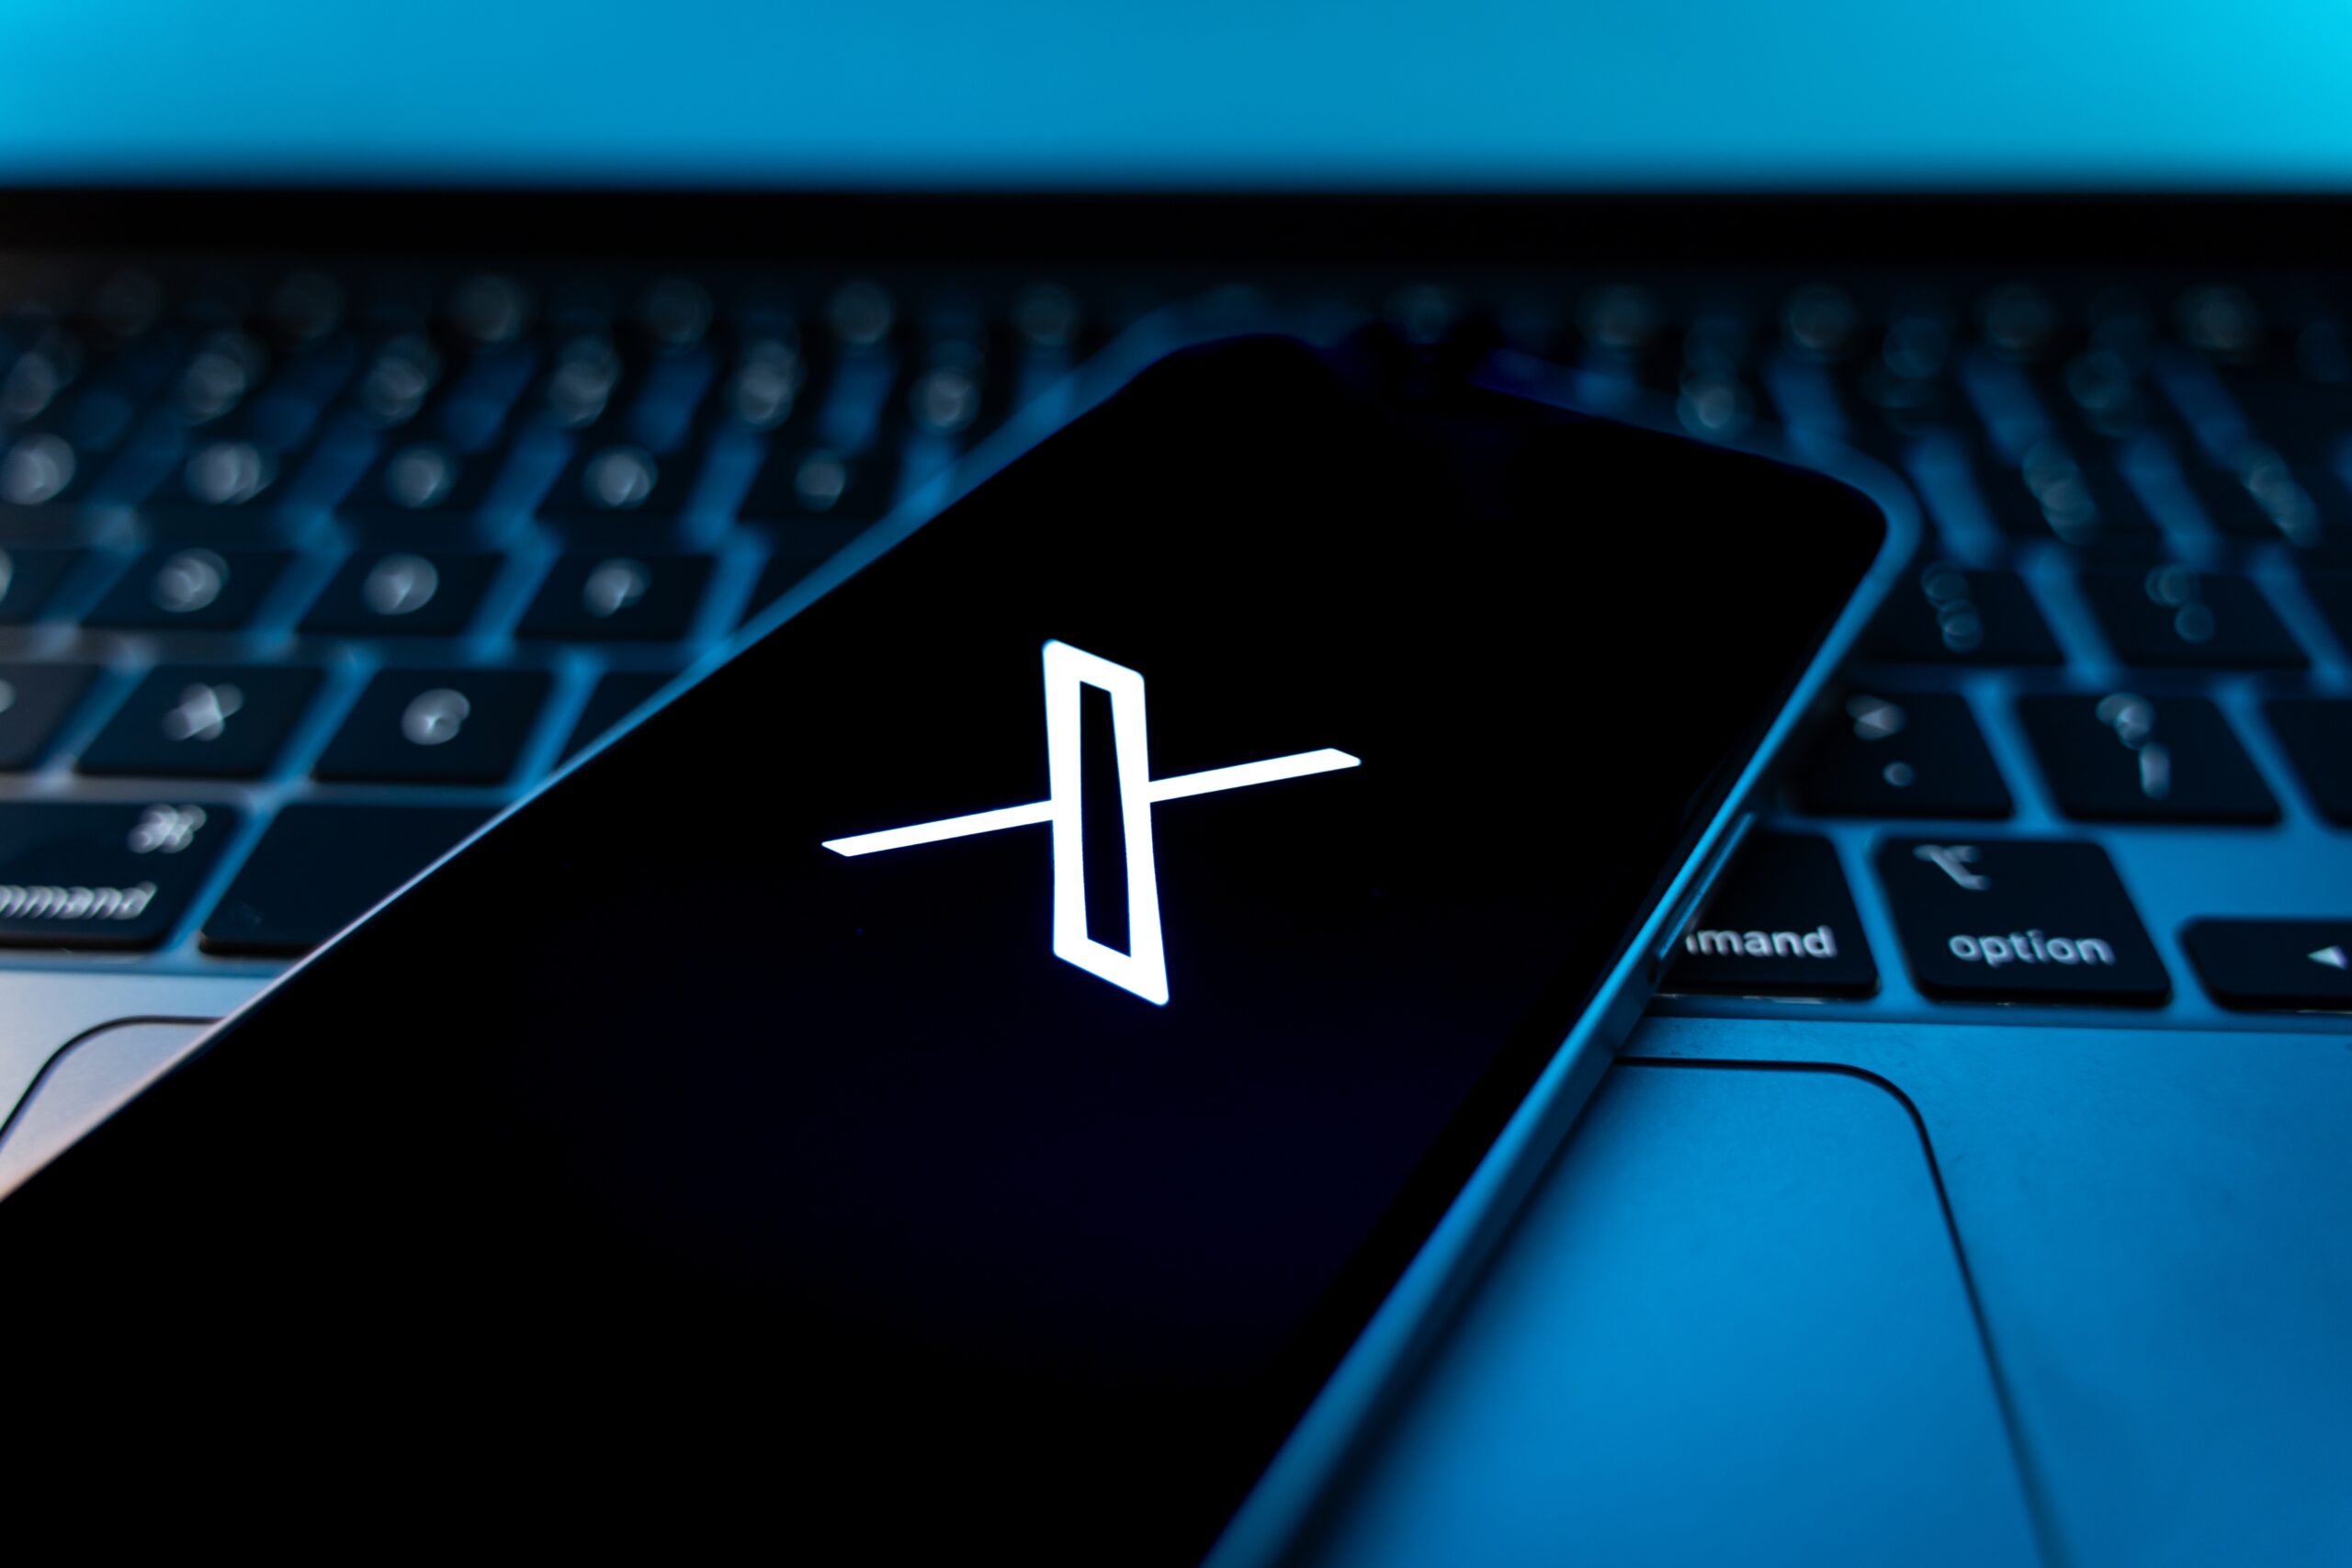 Telefon wyświetlający logo X położony na klawiaturze laptopa.